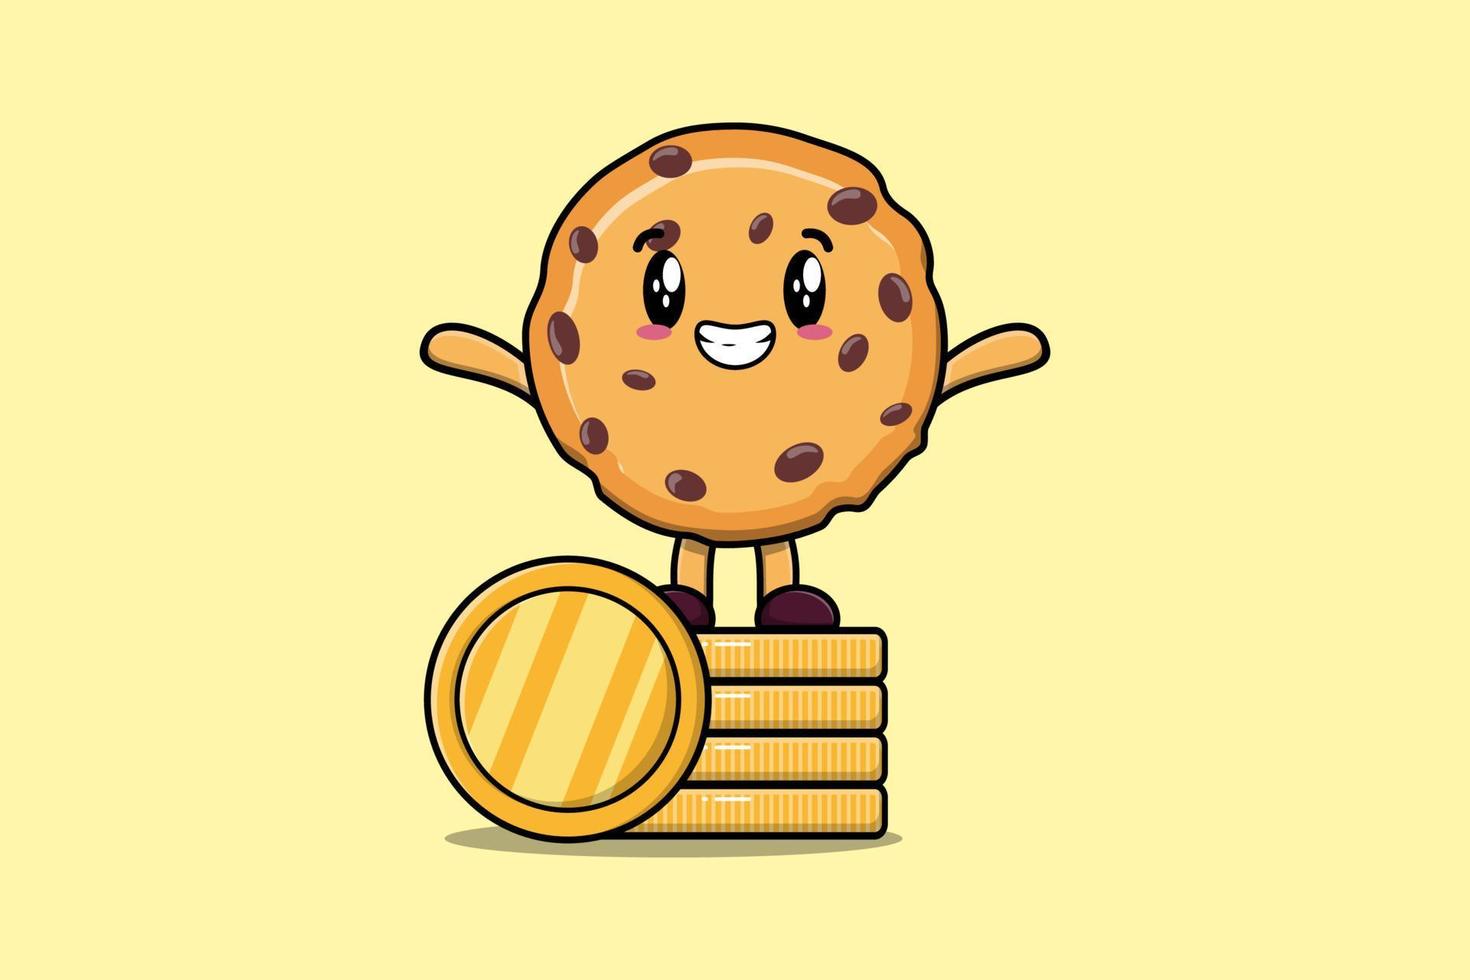 biscoito bonito dos desenhos animados em pé na moeda de ouro empilhada vetor